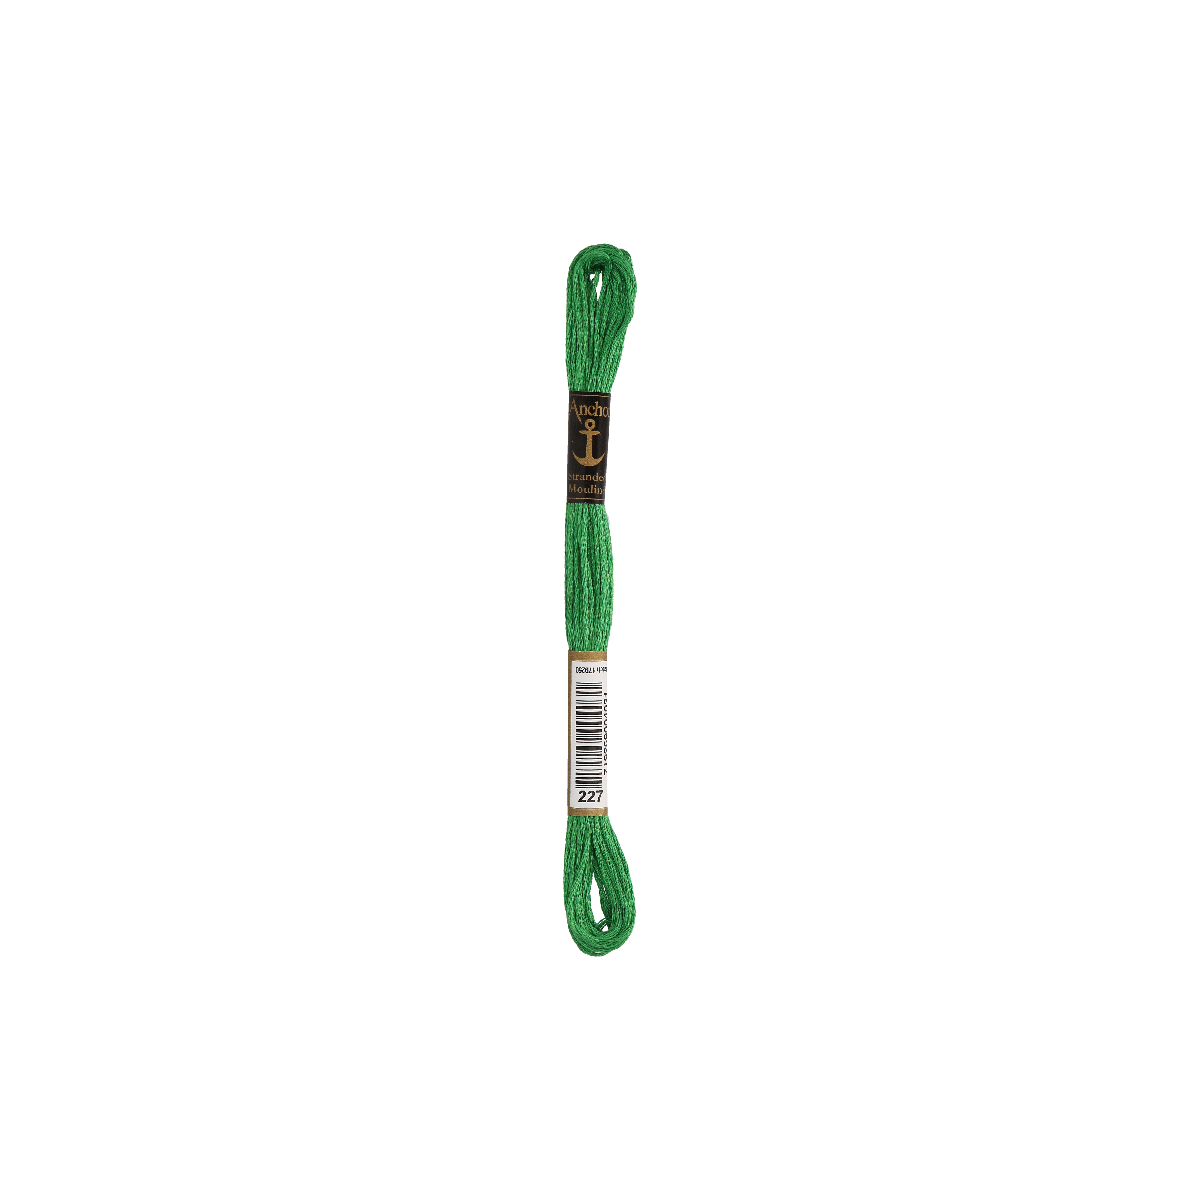 Anchor Sticktwist 8m, verde chiaro, cotone, colore 227, 6...